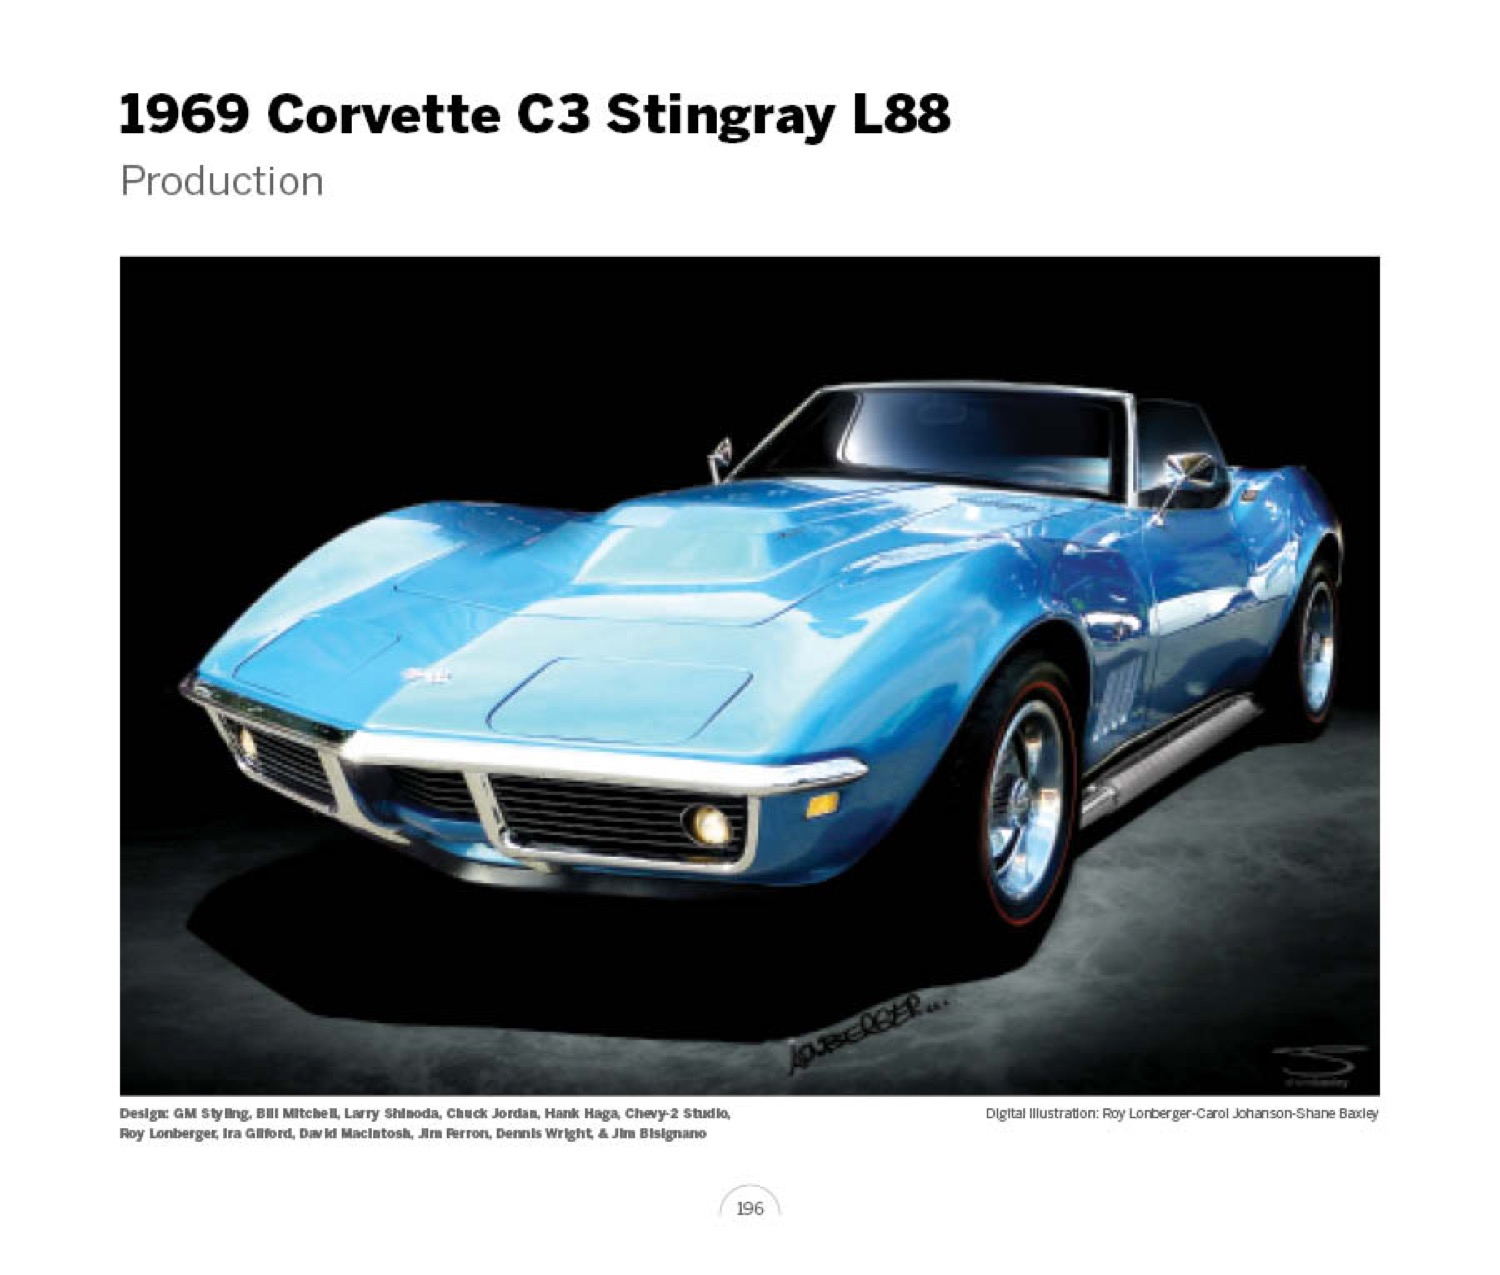 (26) 1969 Corvette C3 Stingray xp807 LoRez.jpg